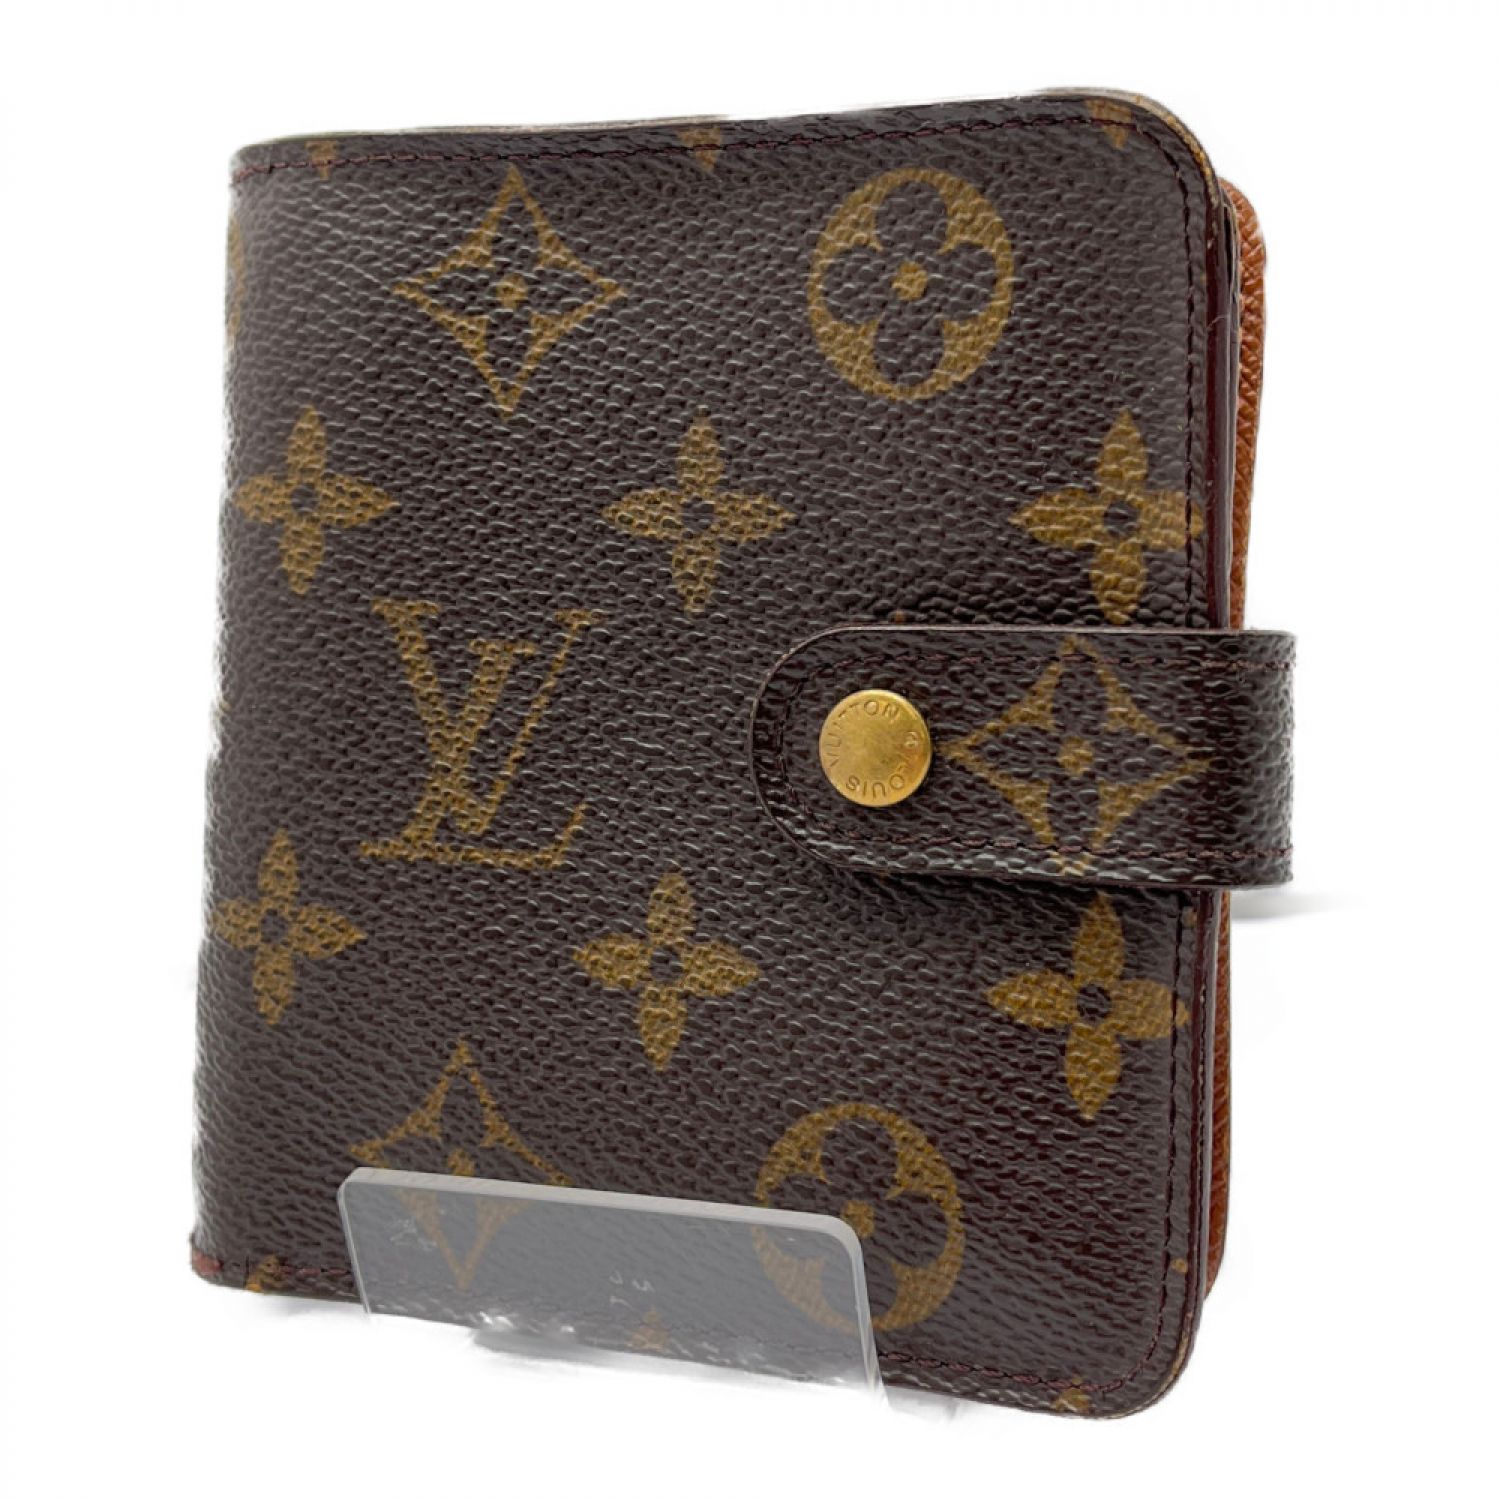 ルイヴィトン モノグラム M61667 コンパクトジップ 財布 二つ折り 茶色